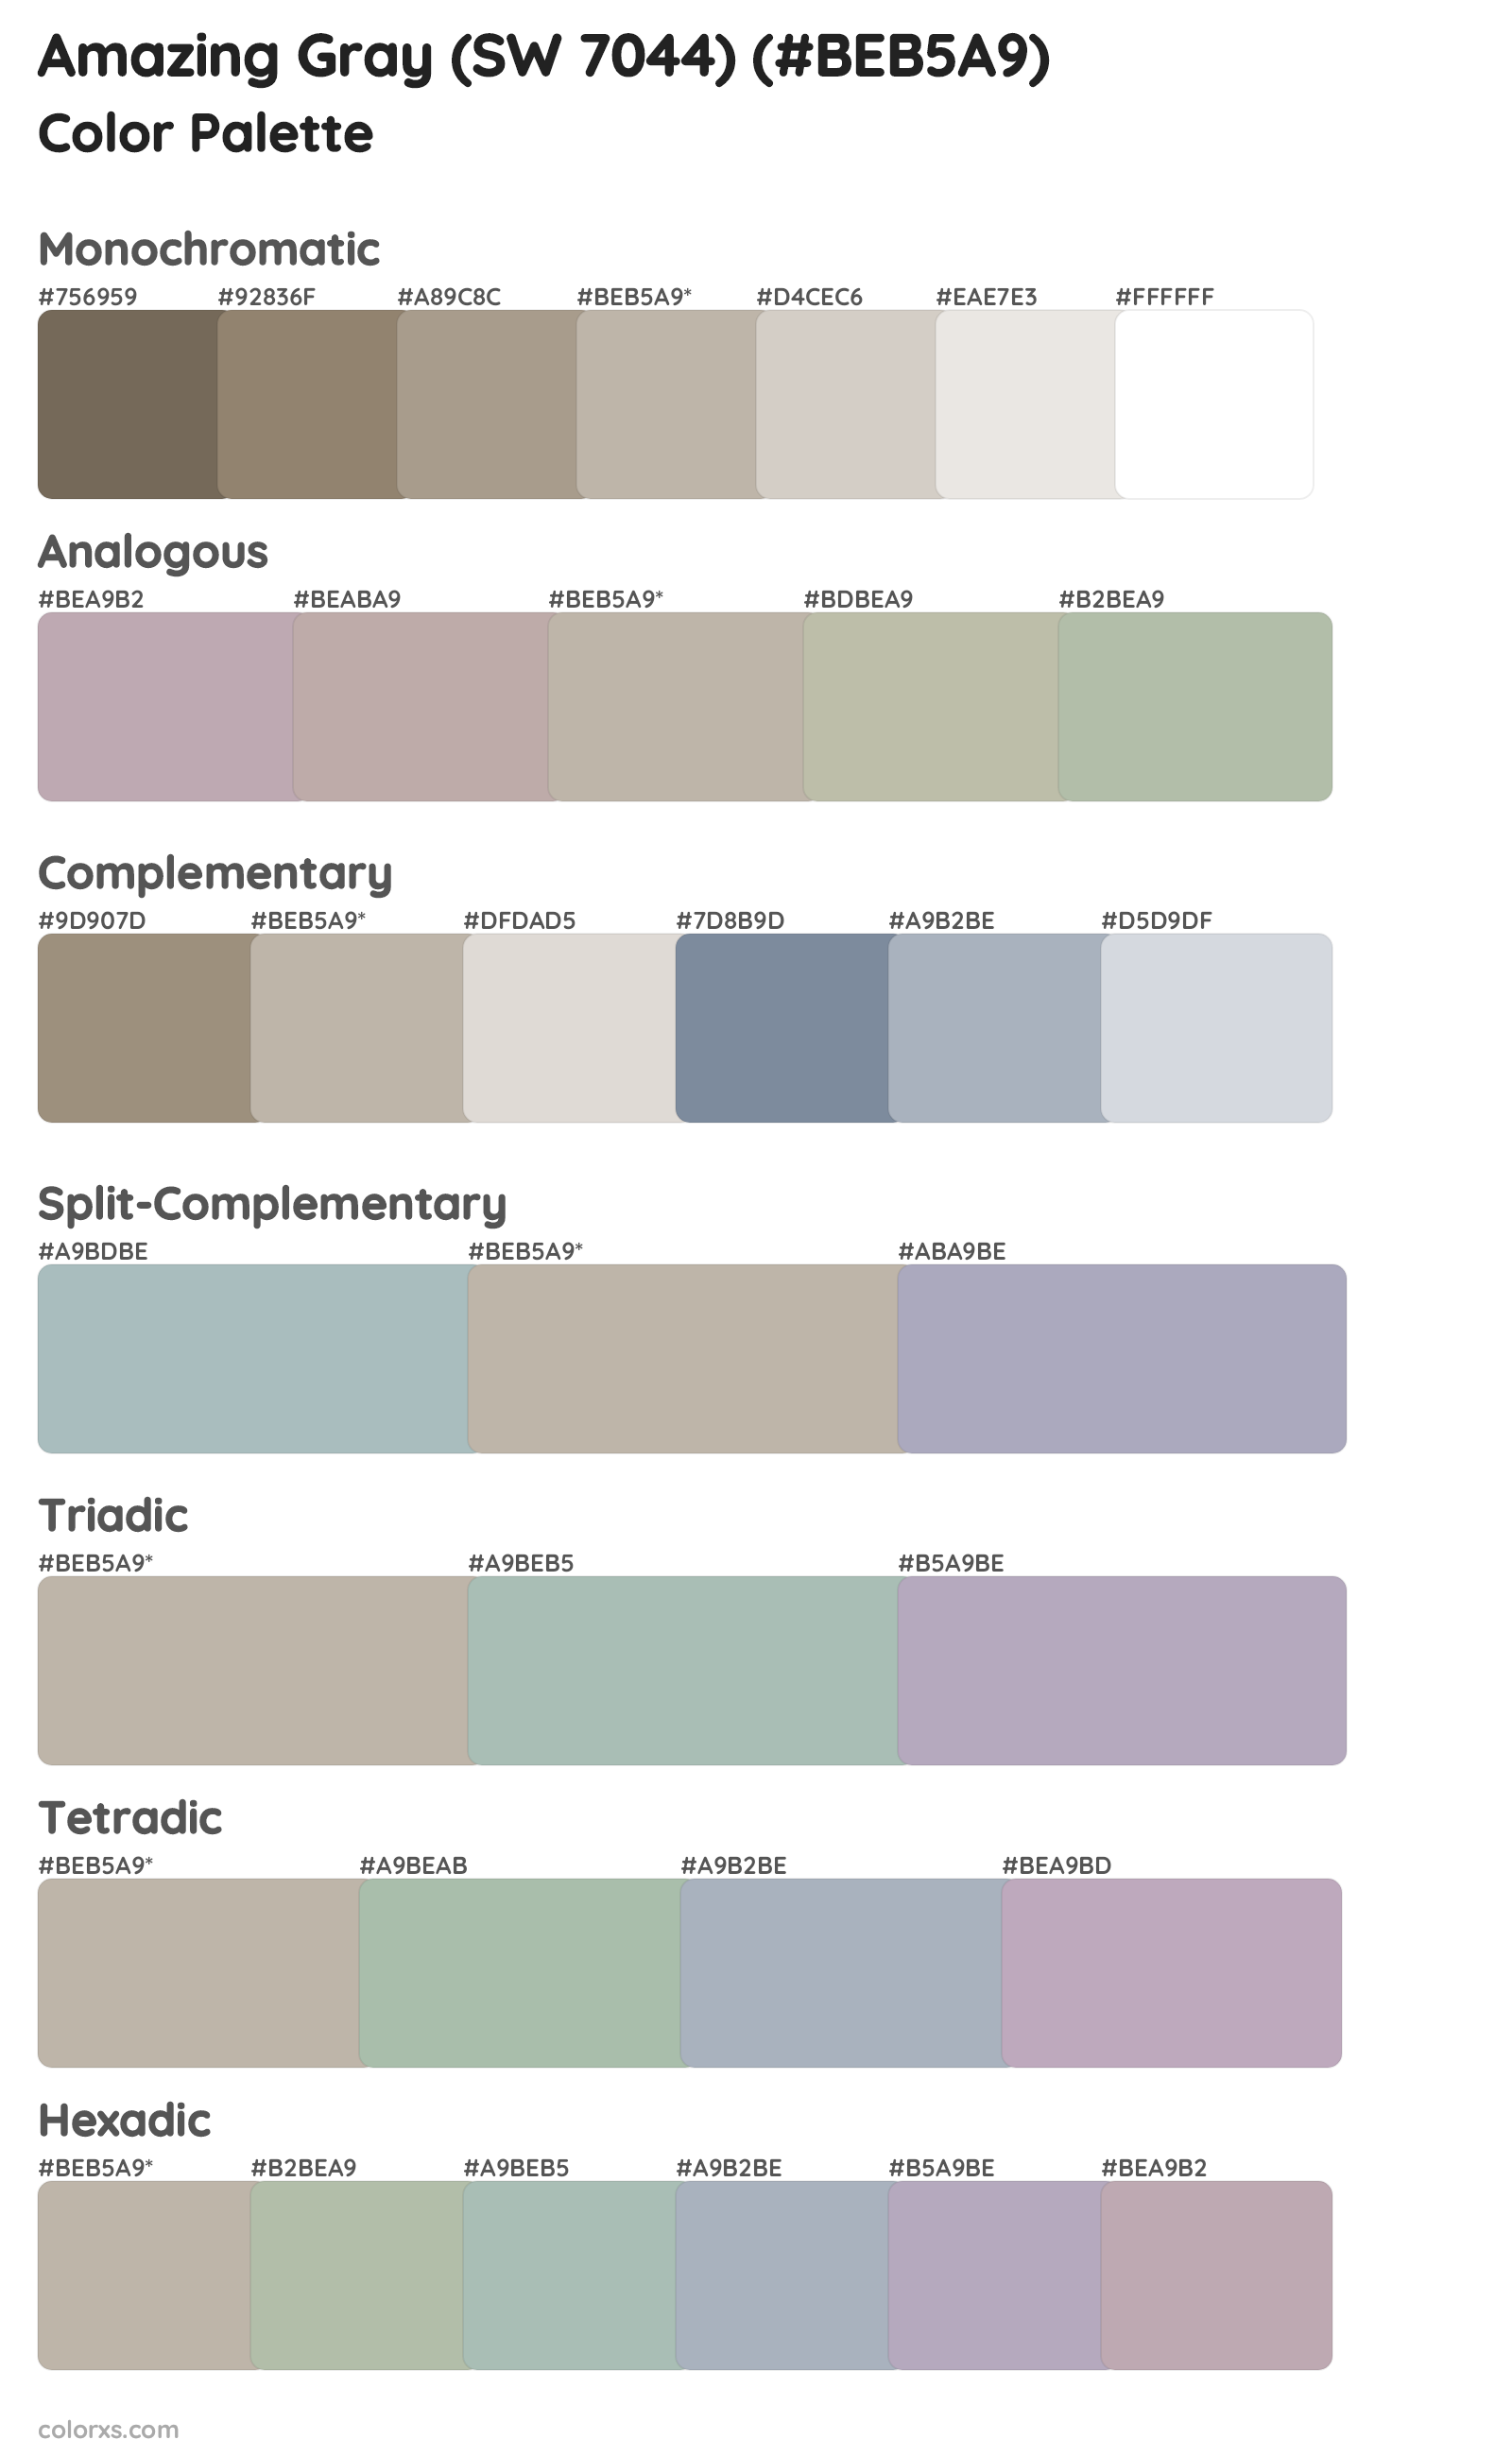 Amazing Gray (SW 7044) Color Scheme Palettes